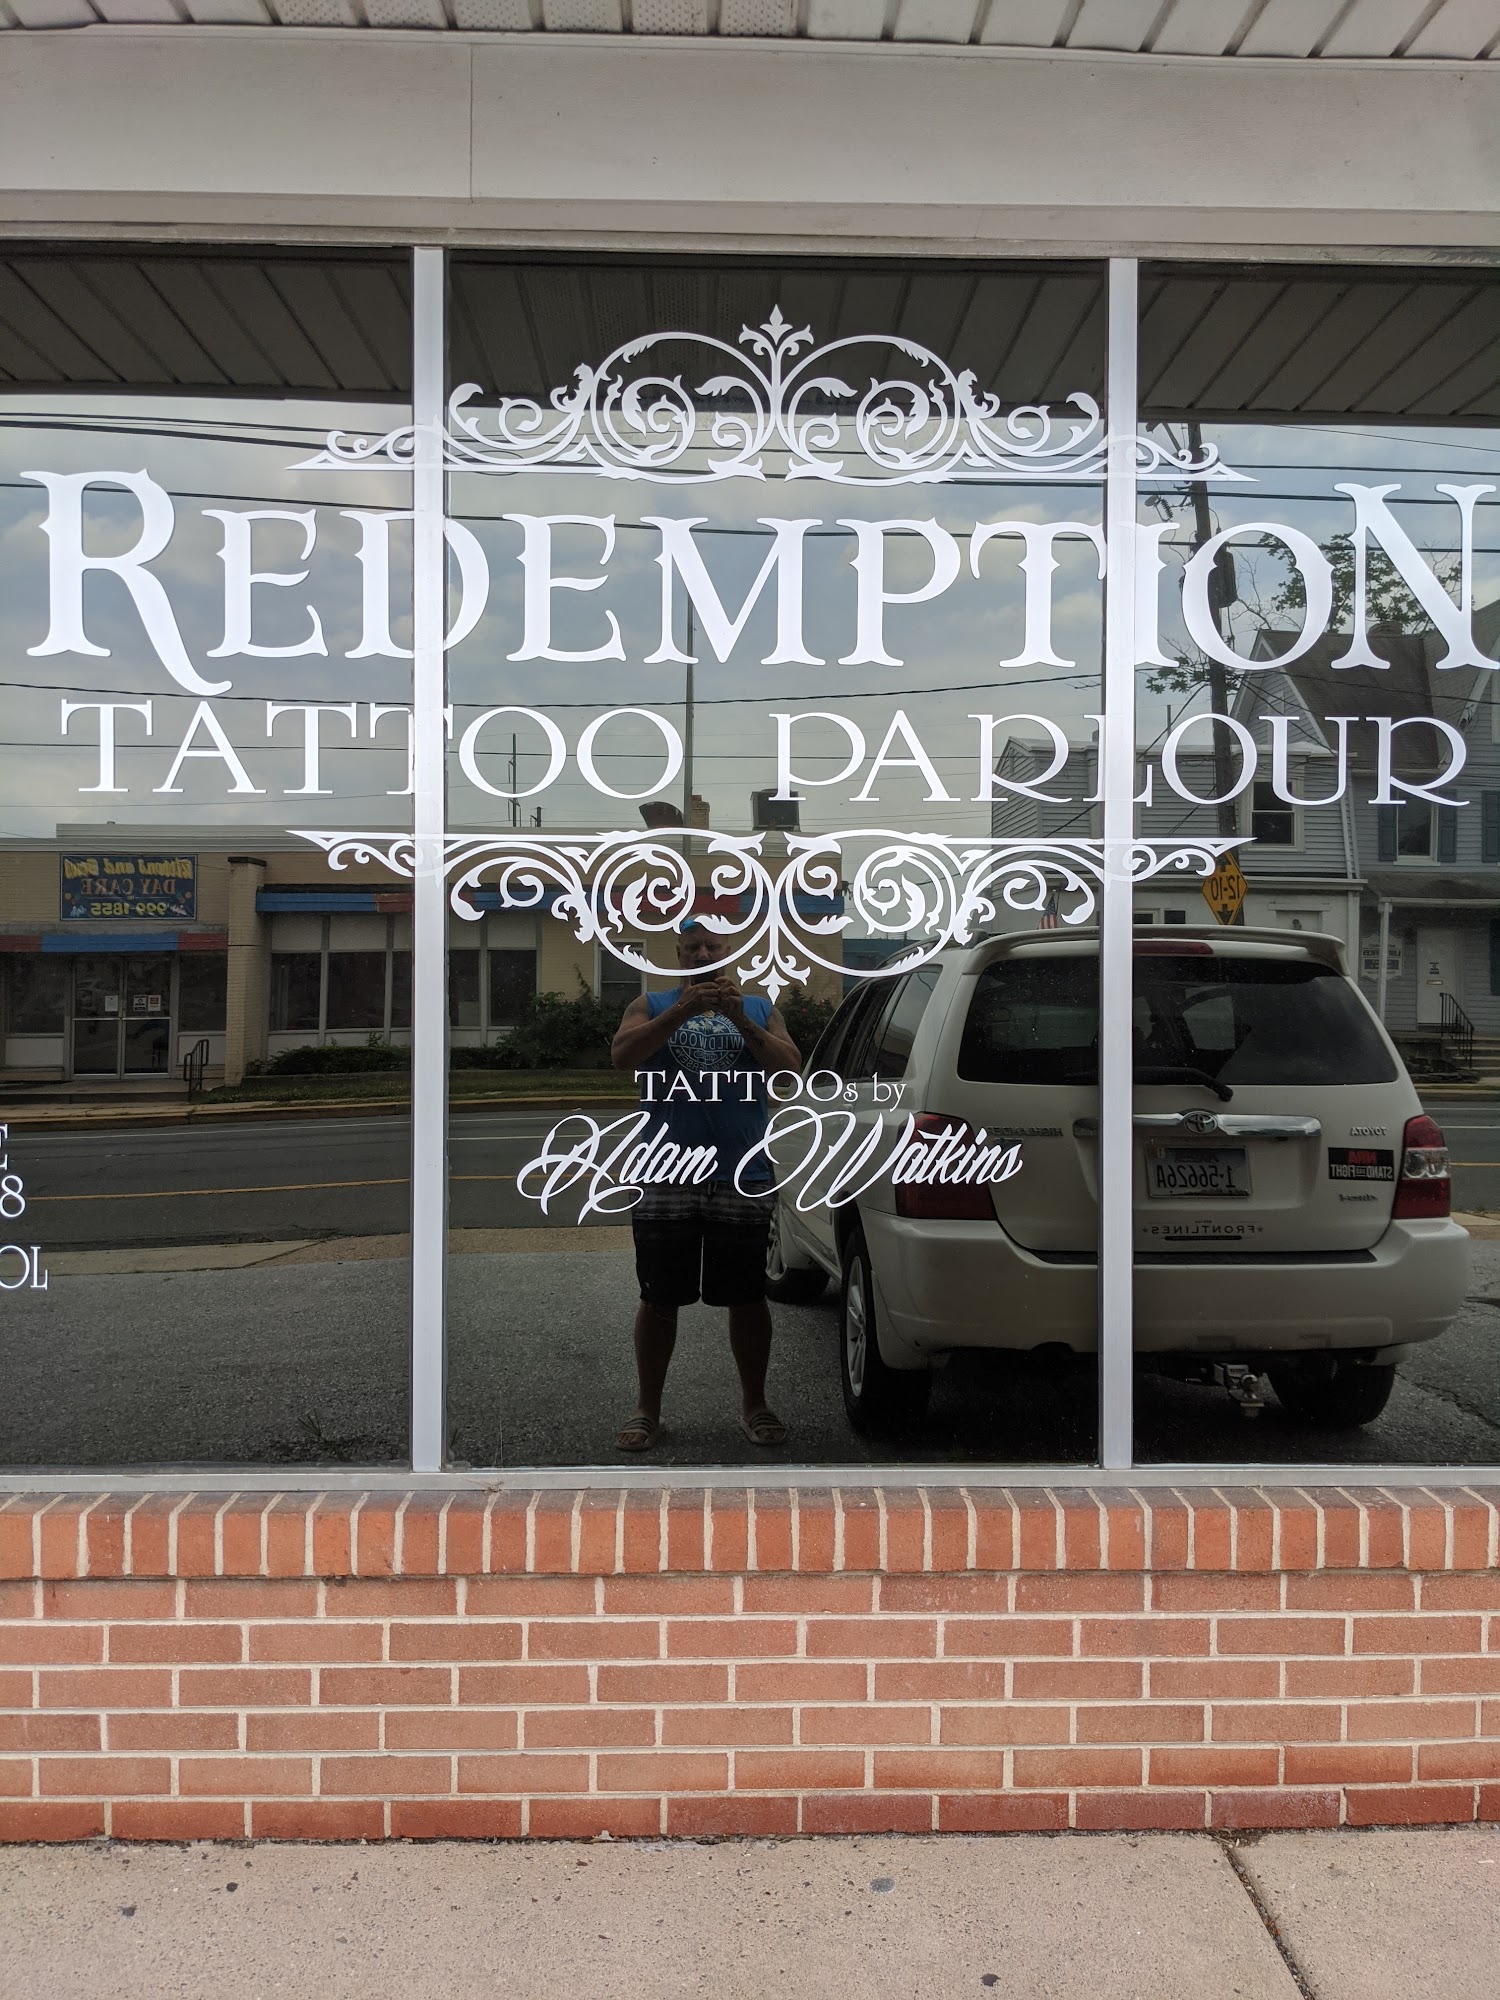 Redemption Tattoo Parlour